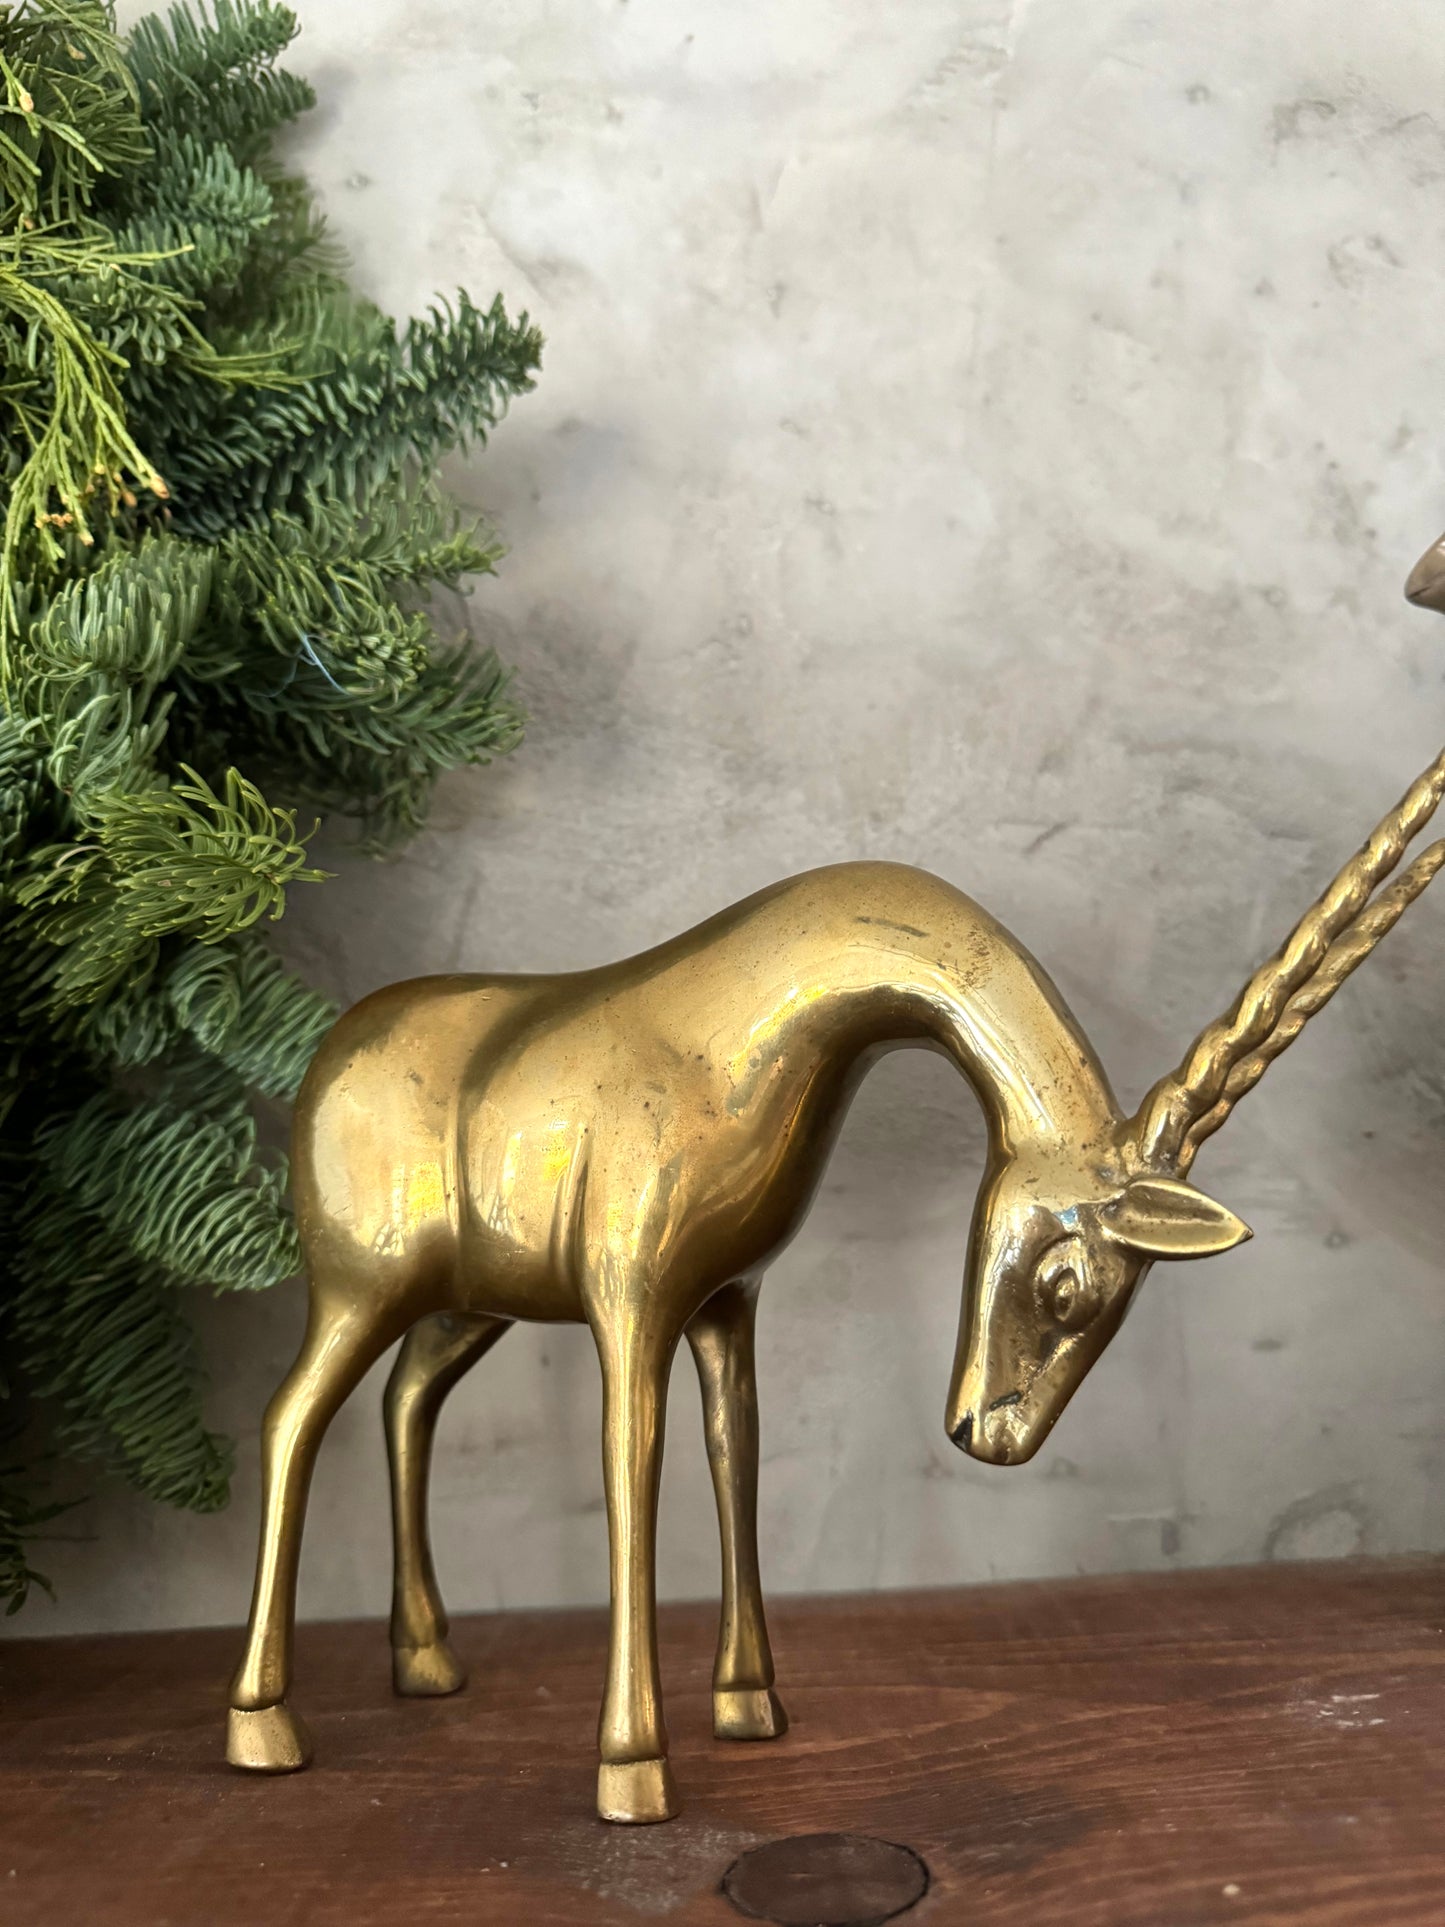 Brass Gazelle figurine shelf decor | Christmas decor